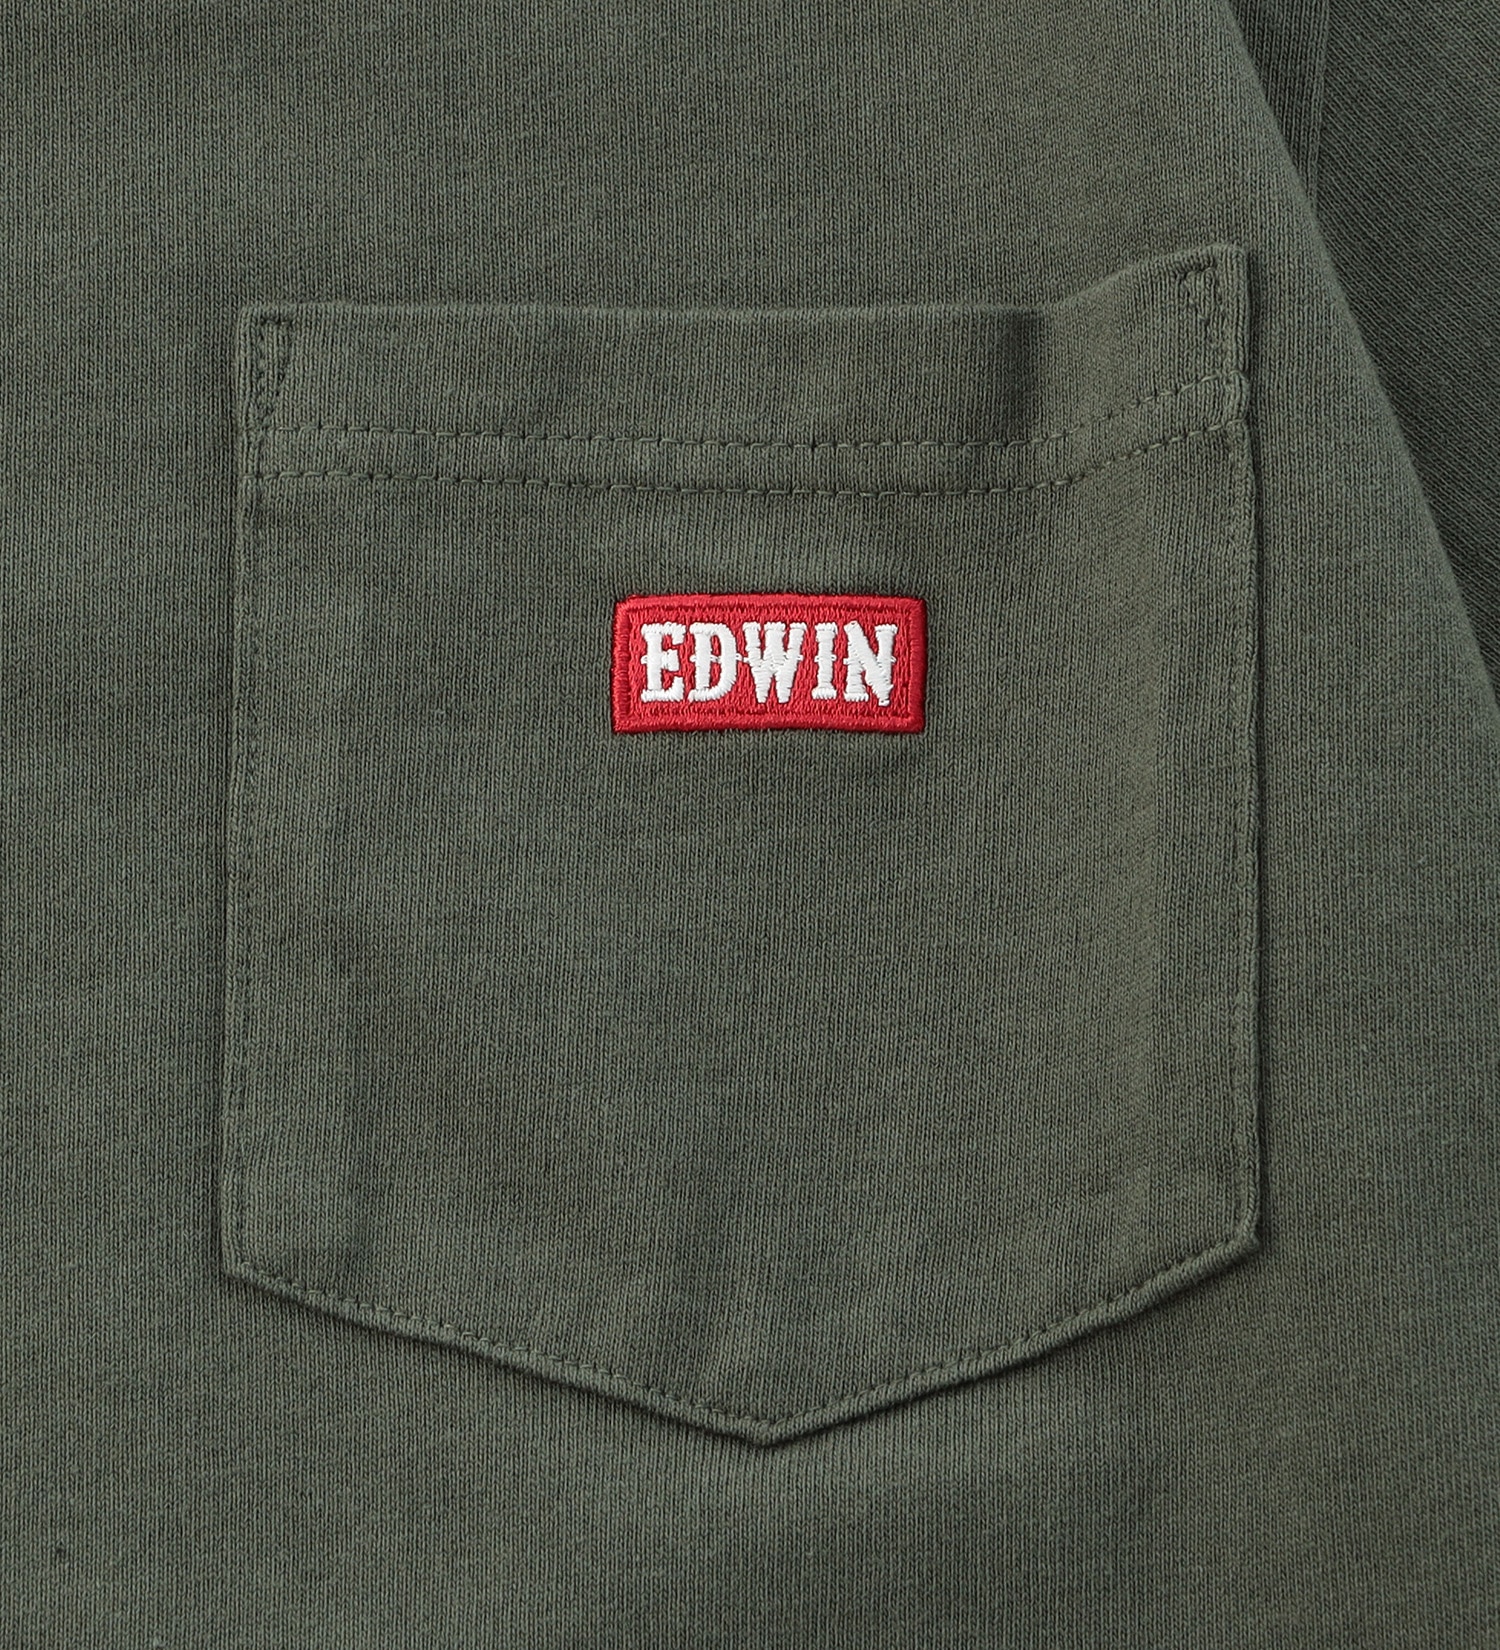 EDWIN(エドウイン)の【BLACKFRIDAY】ポケットロゴTシャツ 半袖【アウトレット店舗・WEB限定】|トップス/Tシャツ/カットソー/メンズ|オリーブ